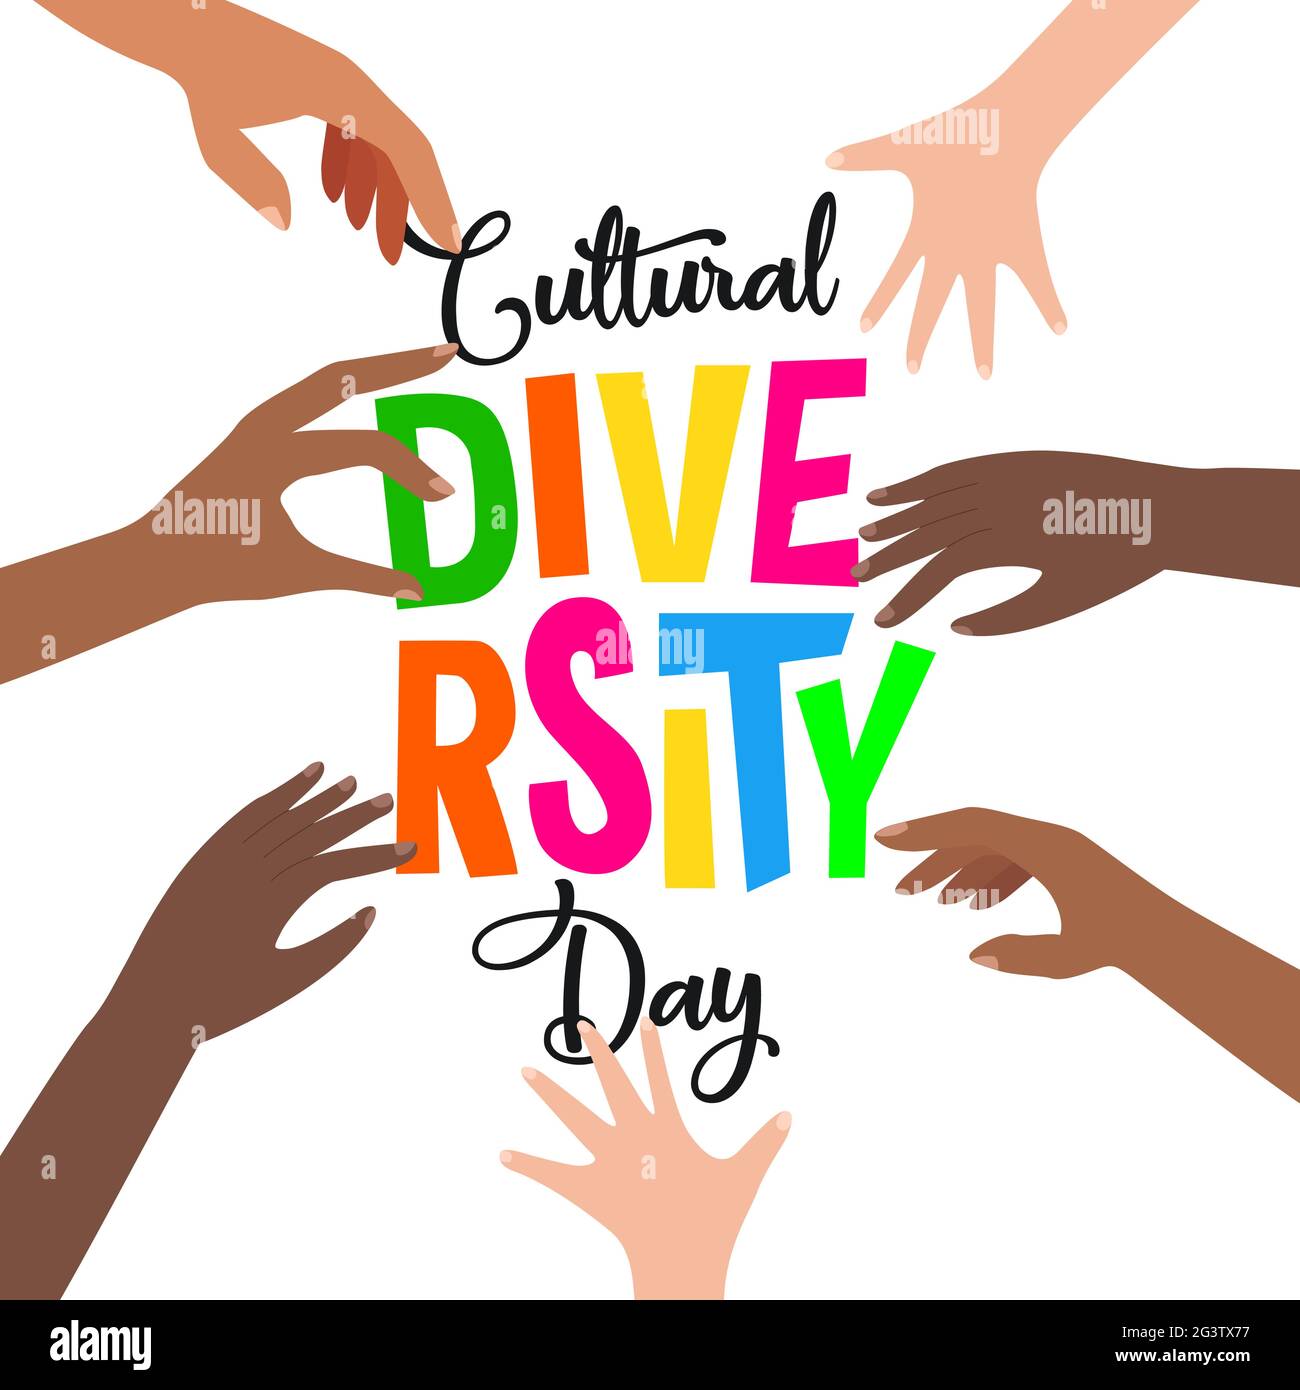 World Cultural Diversity Grußkarte der bunten verschiedenen Menschen Hände Gruppe hilft zusammen für 21 Mai internationalen Feiertag Veranstaltung Feier. Stock Vektor